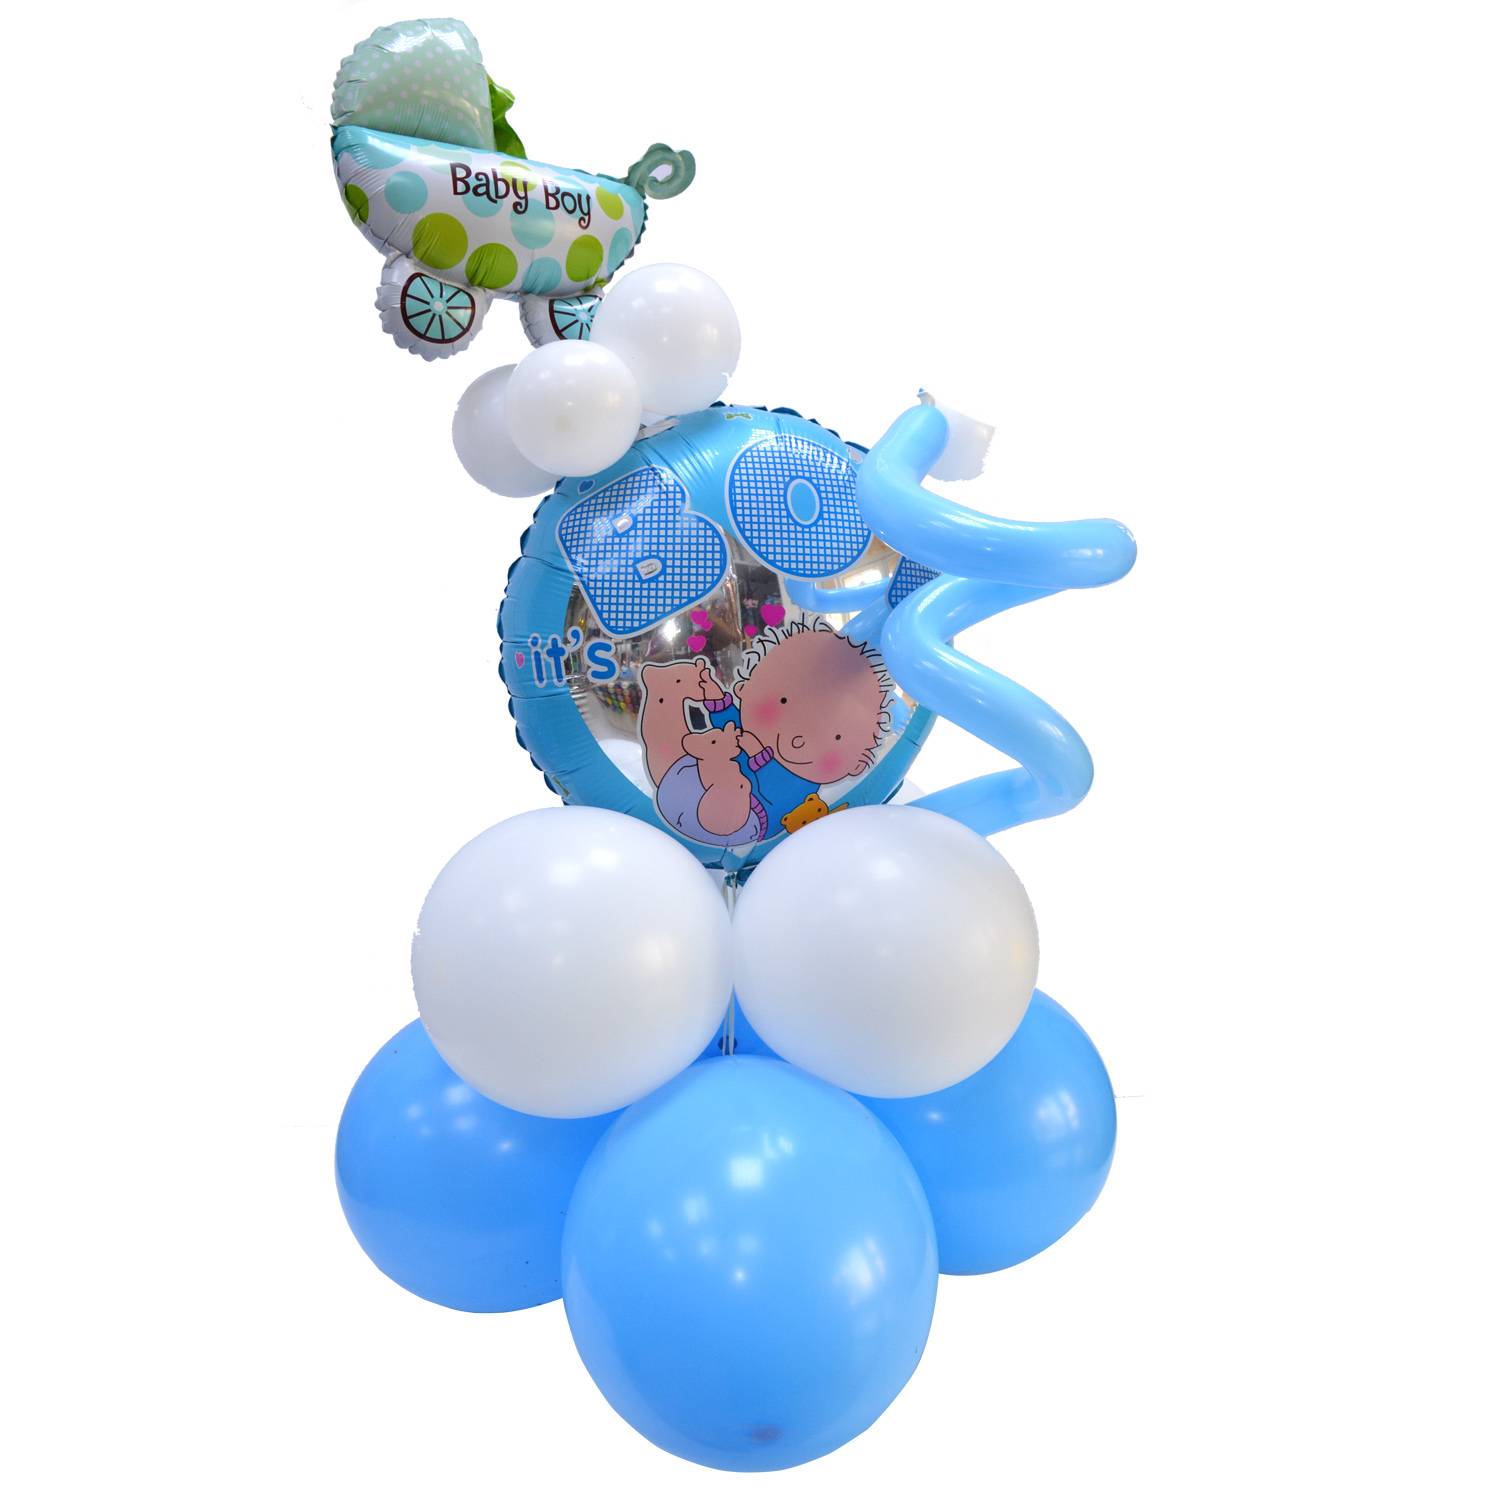 Baby Boy Balloon Stand | Flower Gift Center